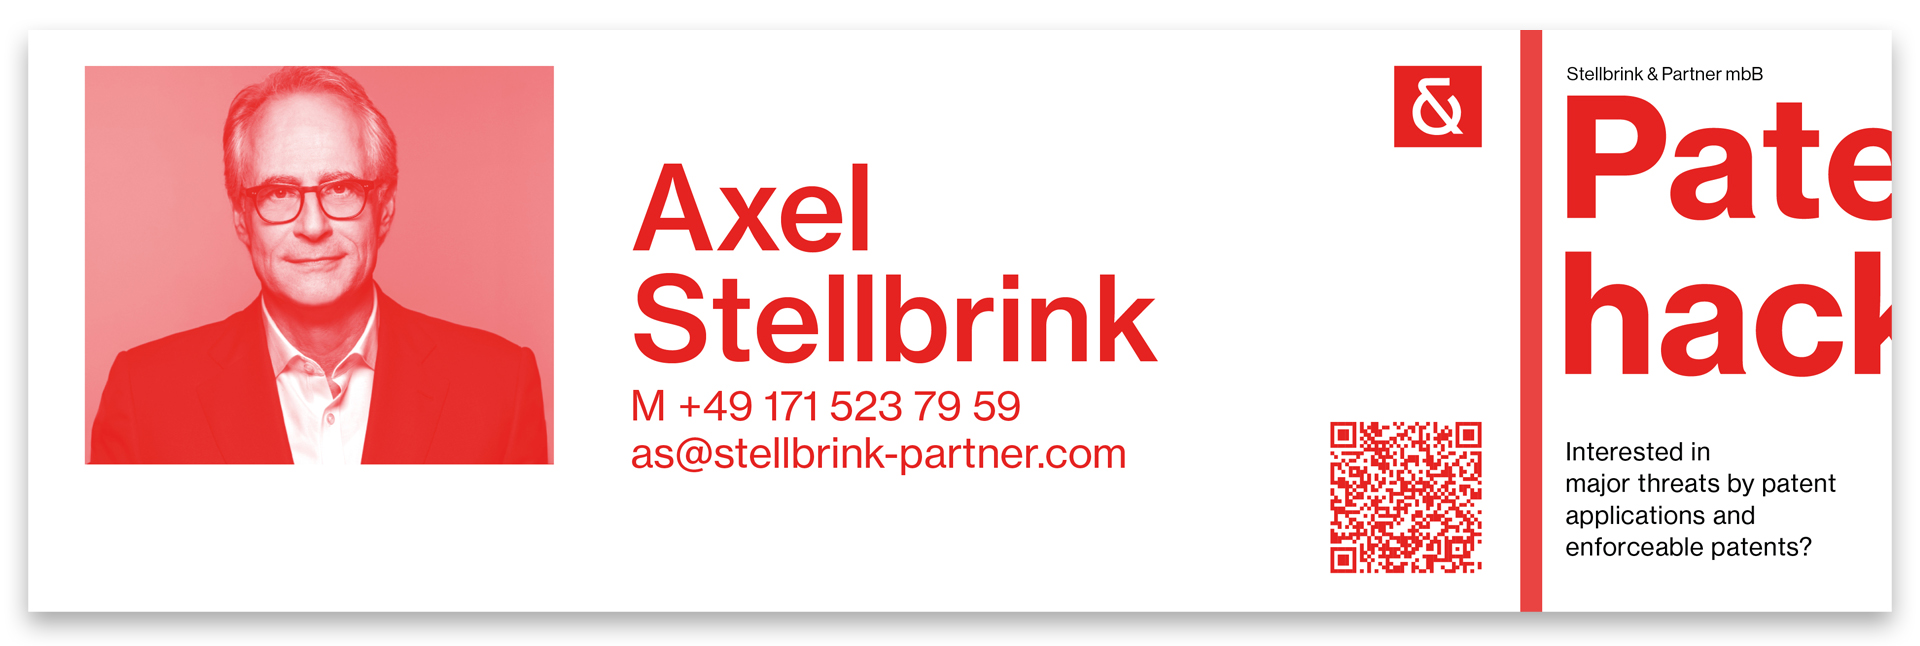 Die Rueckseite des faltbaren Flyers von Axel Stellbrink. Er ist schwarz rot mit einem Bild von einem Mann, einem QR-Code und Text zu Axel.